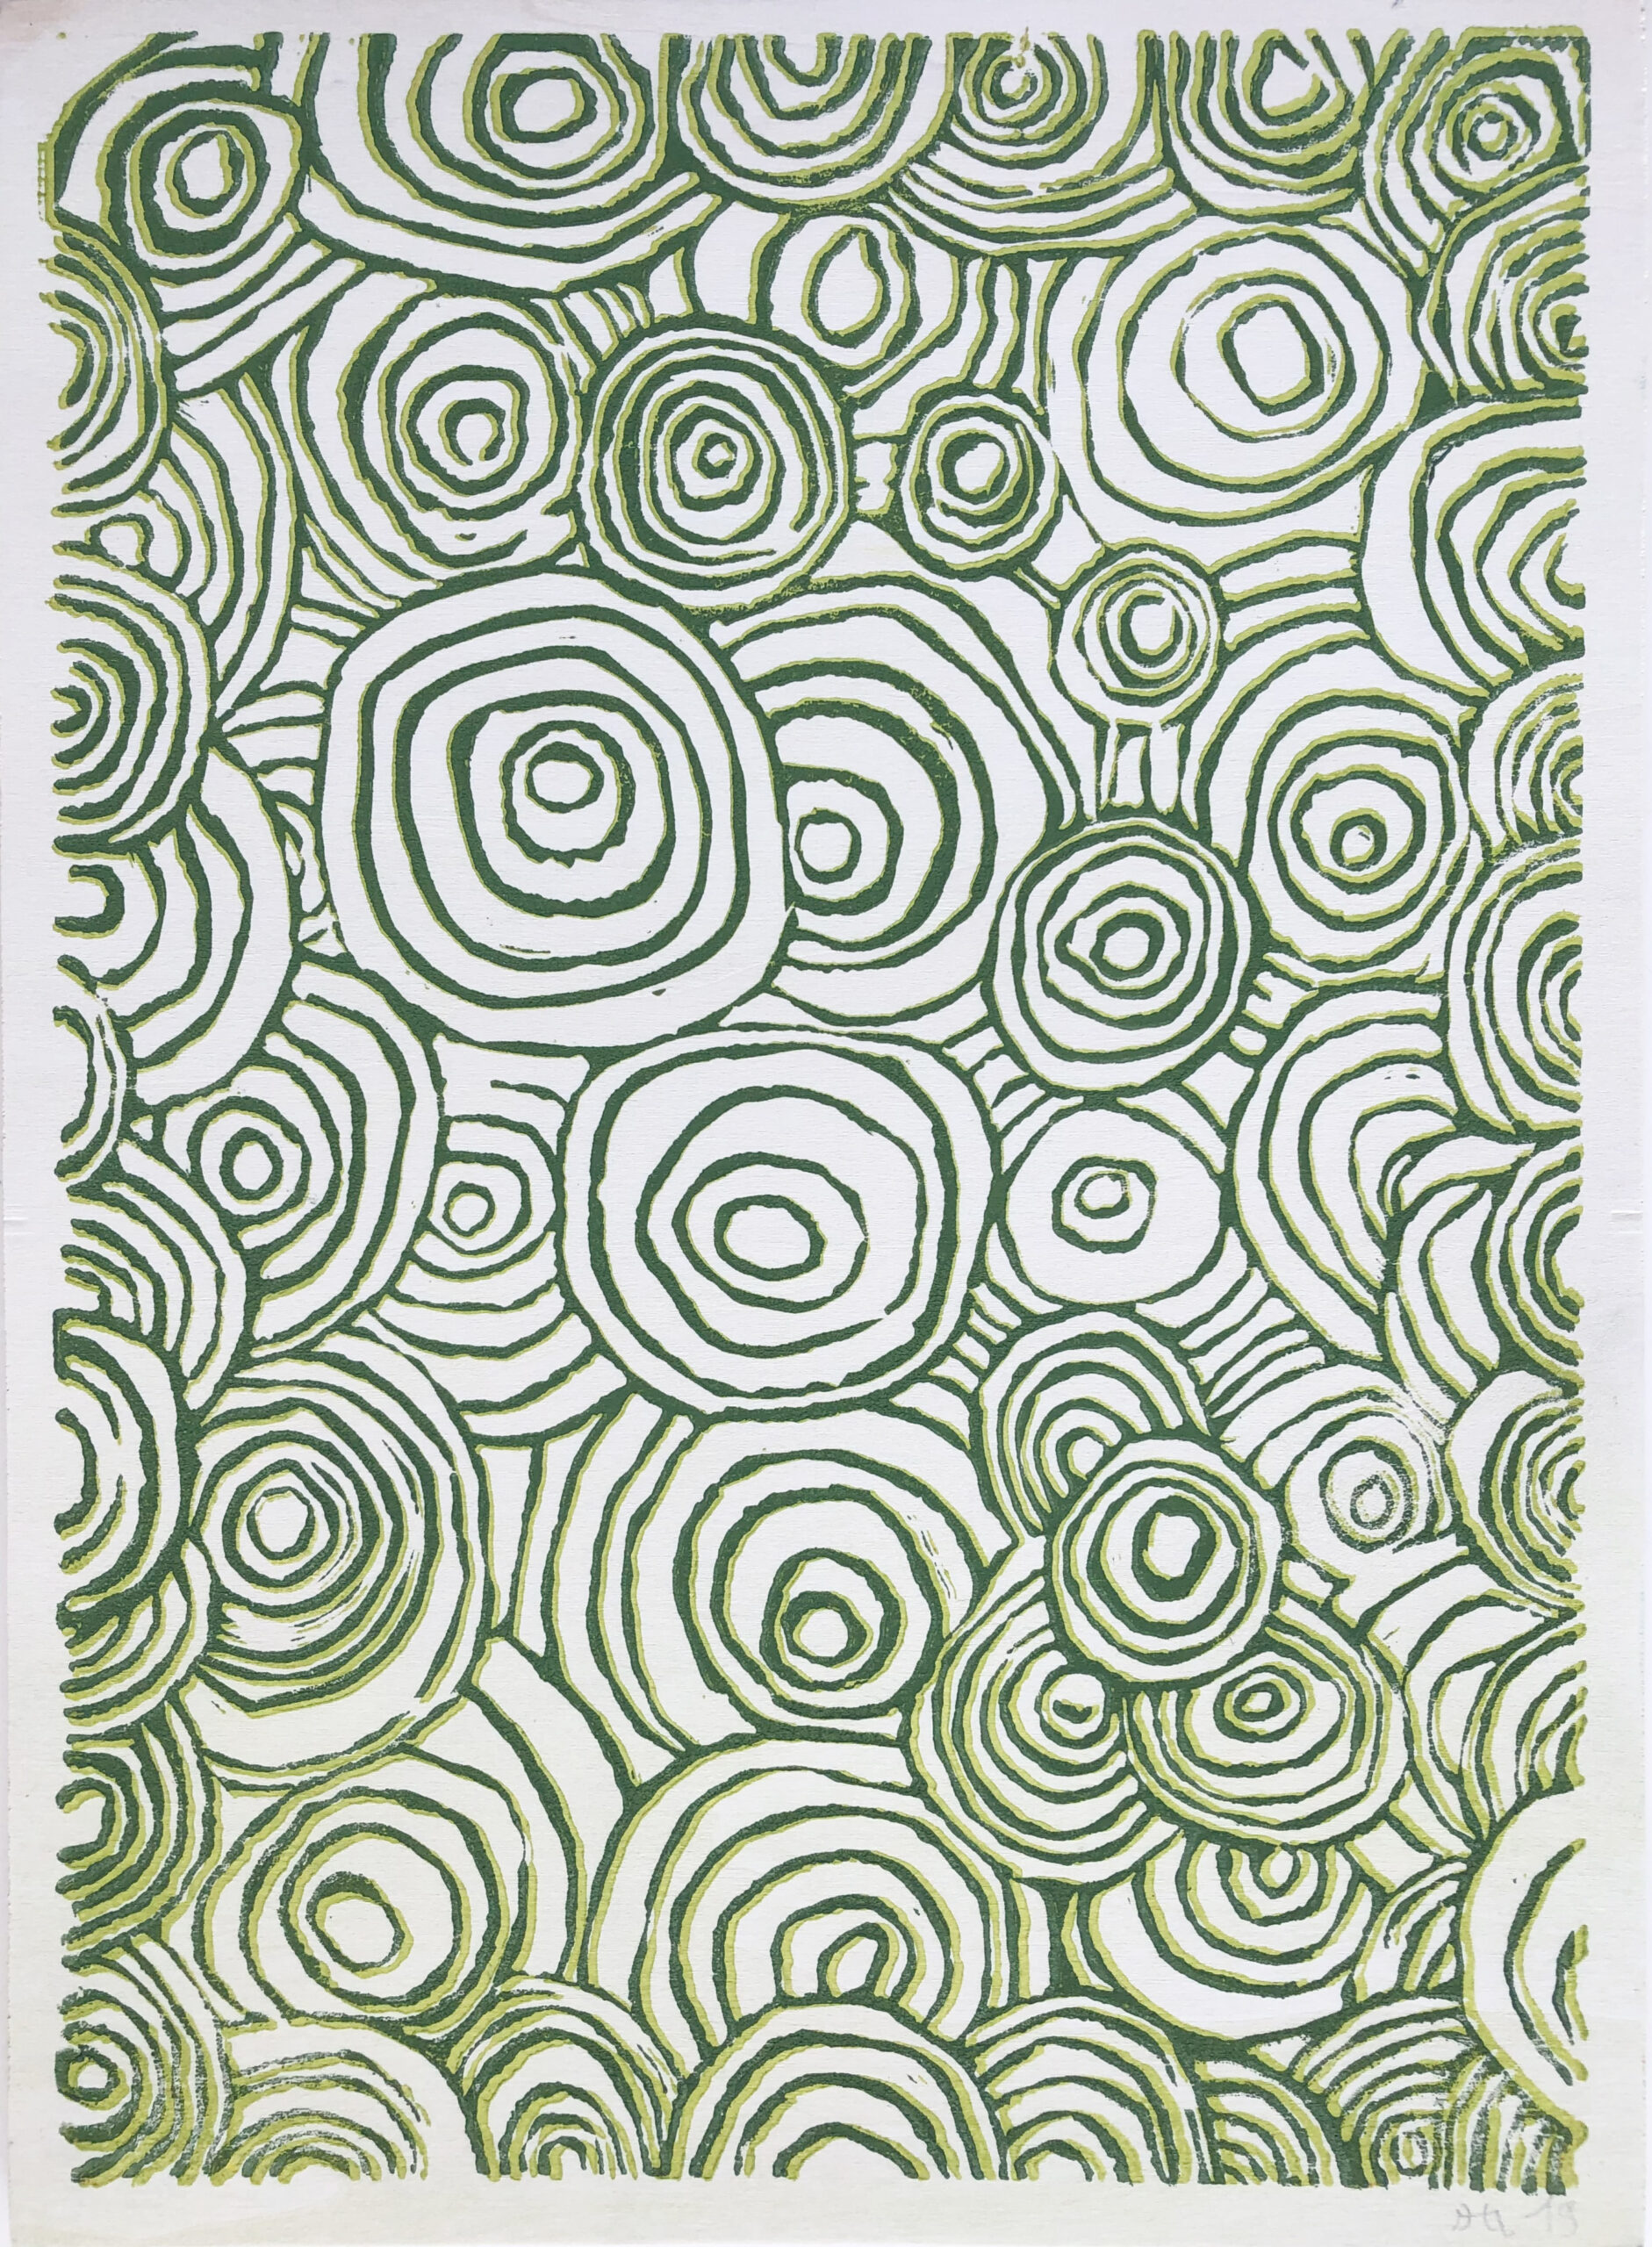 ATELIER FREISTIL: Circles Green – Linoldruck auf Holz, signiert, mit Aufhänger – 44 x 32 cm